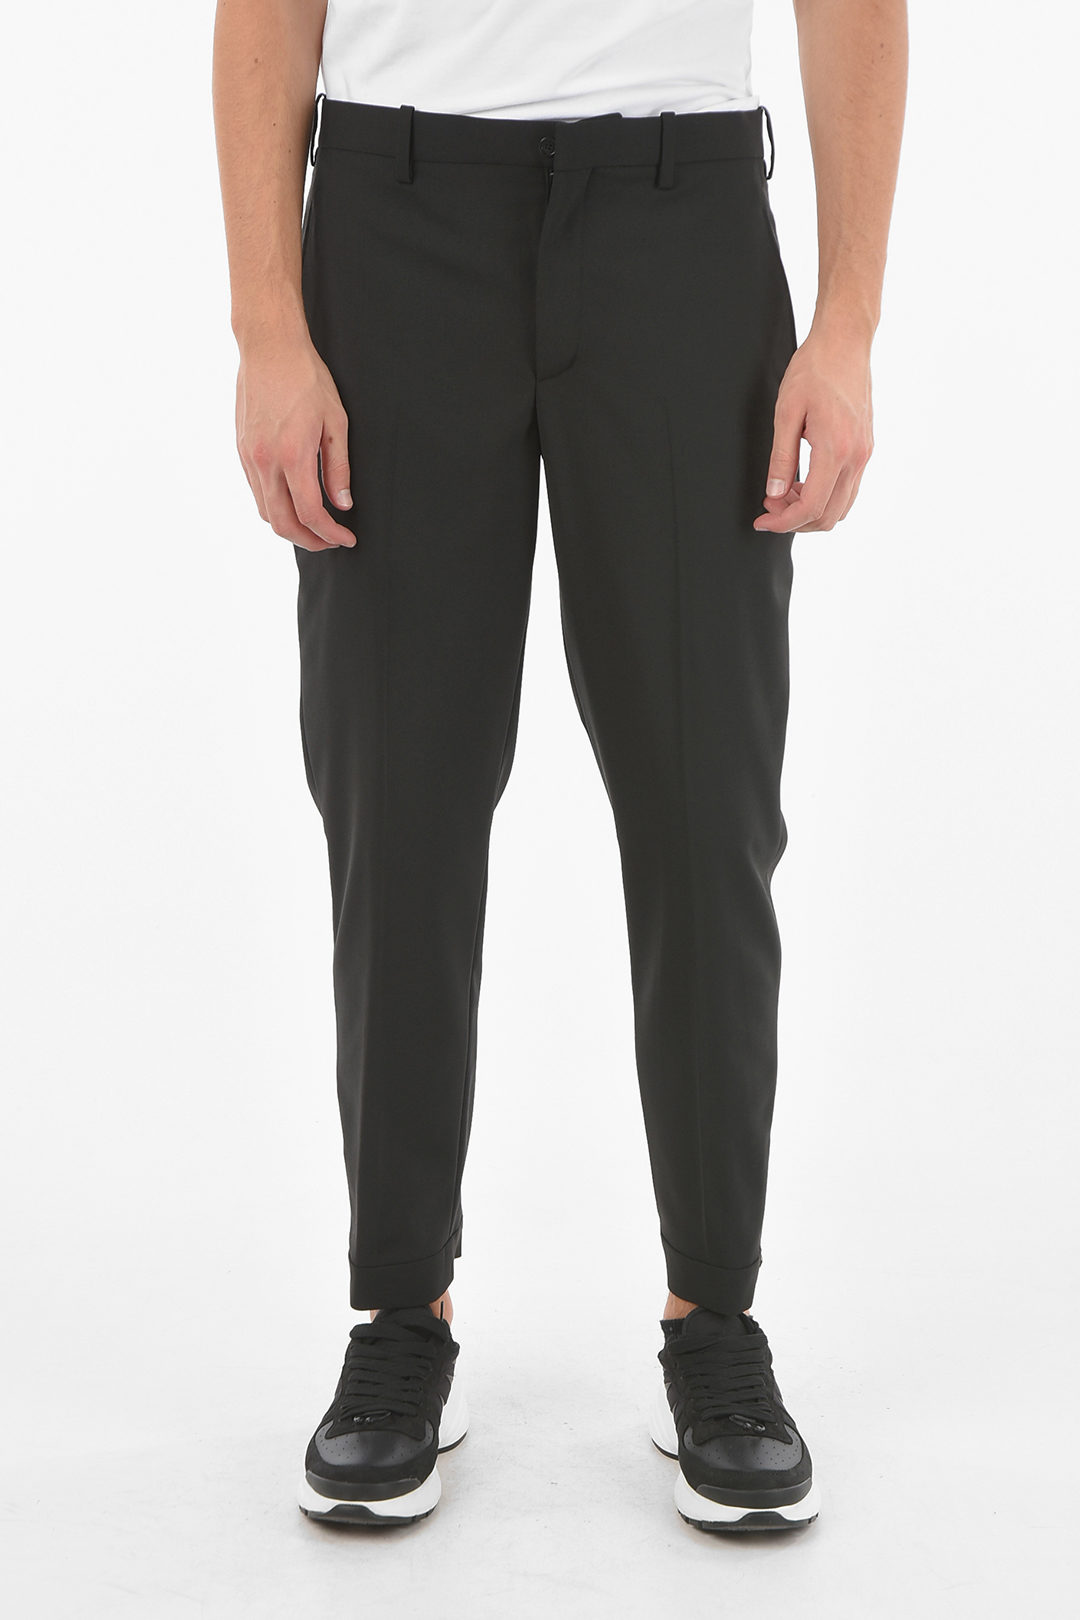 DKNY Twill Side-Zip Ankle Pants - Macy's